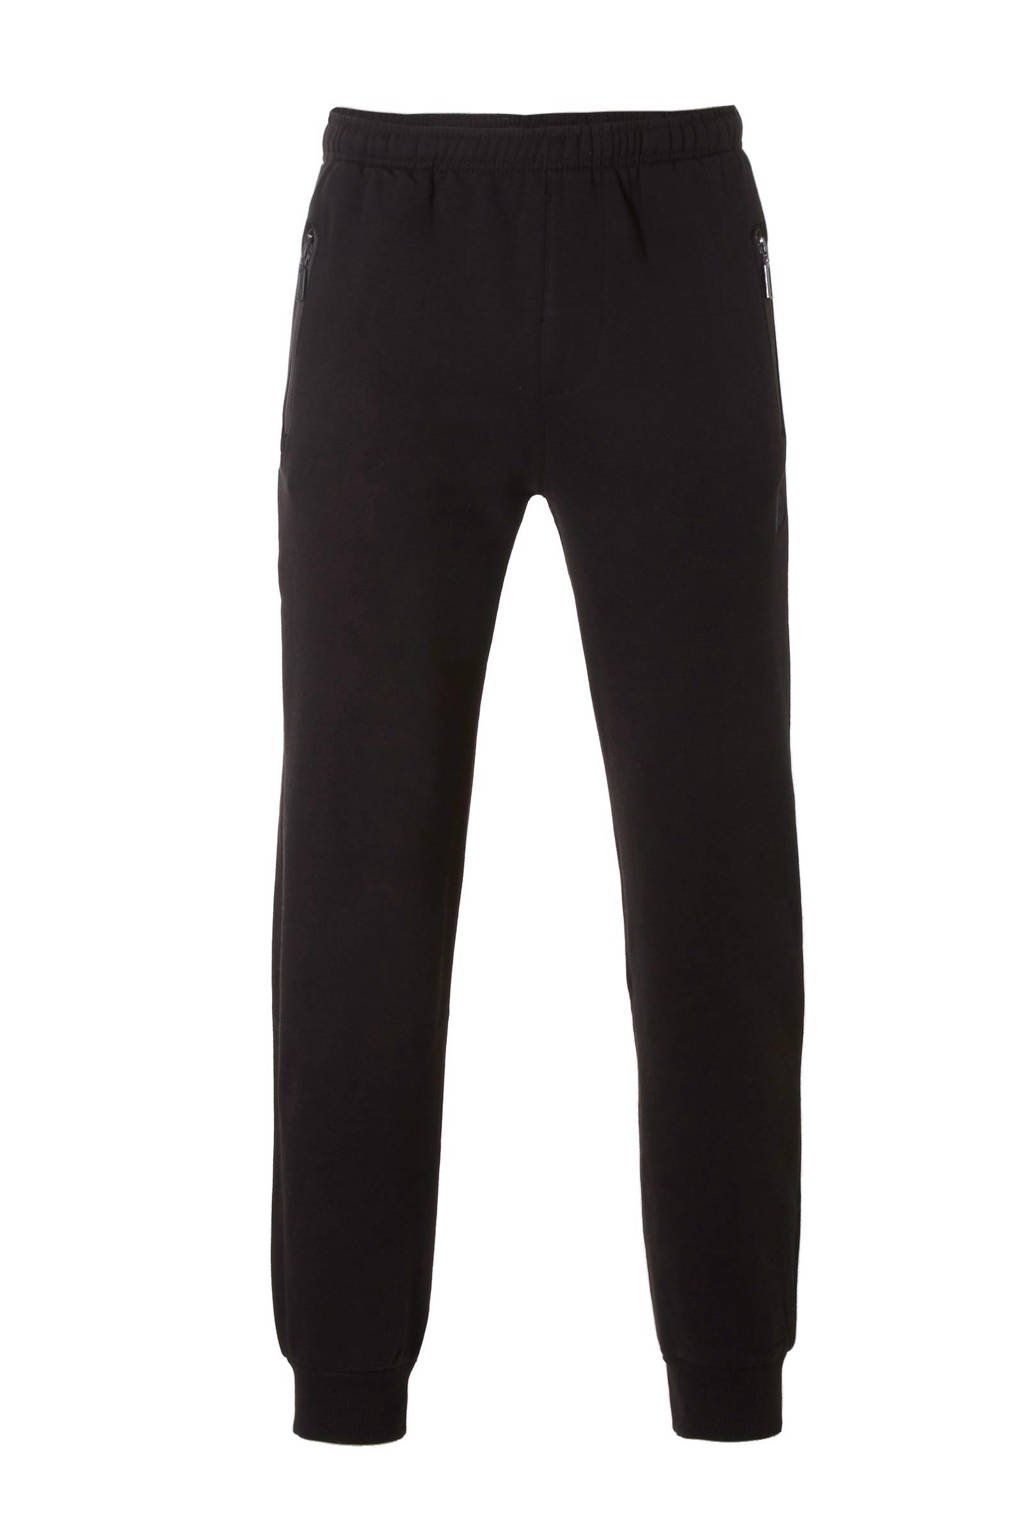 Zwarte heren Donnay trainingsbroek van polyester met regular fit, regular waist, elastische tailleband met koord en logo dessin